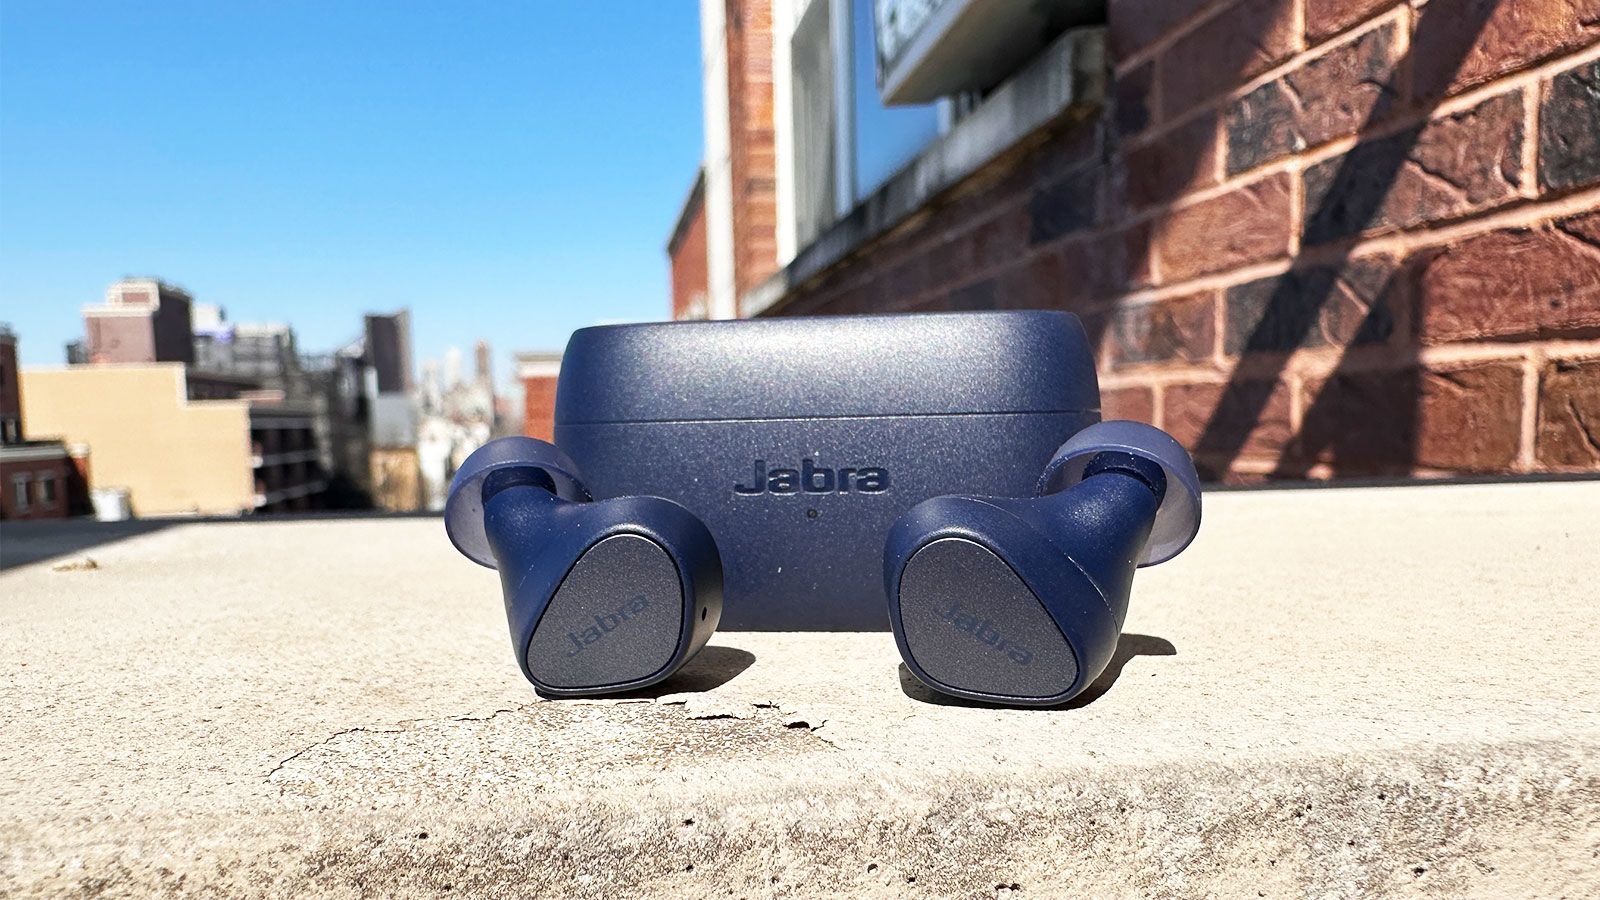 Jabra Elite 3 Dark Grey - Écouteurs Bluetooth True Wireless